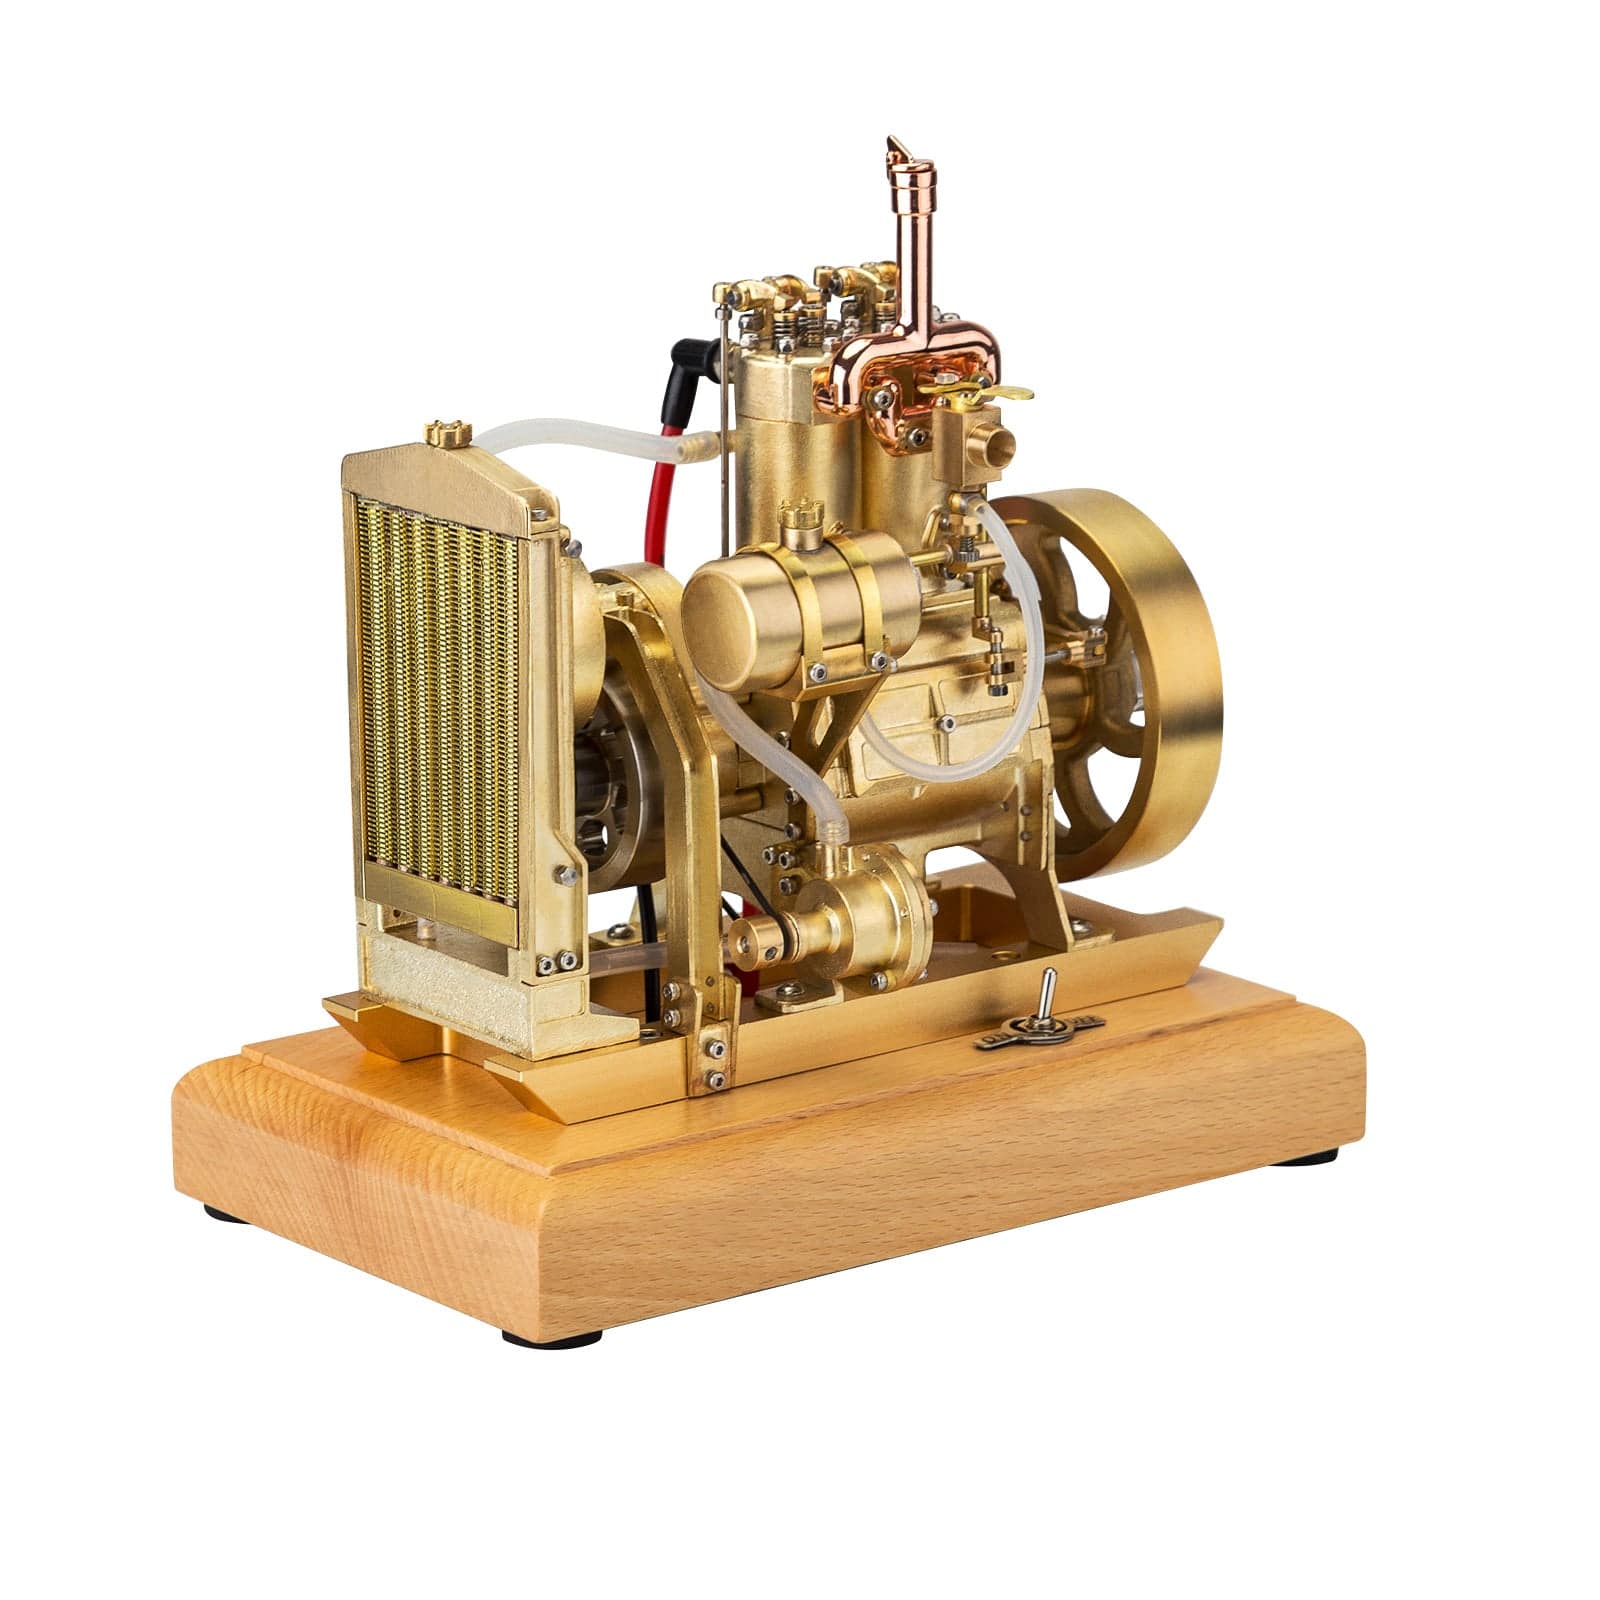 H74 5cc 4-Stroke 2-Cylinder Water Cooled Gasoline Internal Combustion Engine Model 1